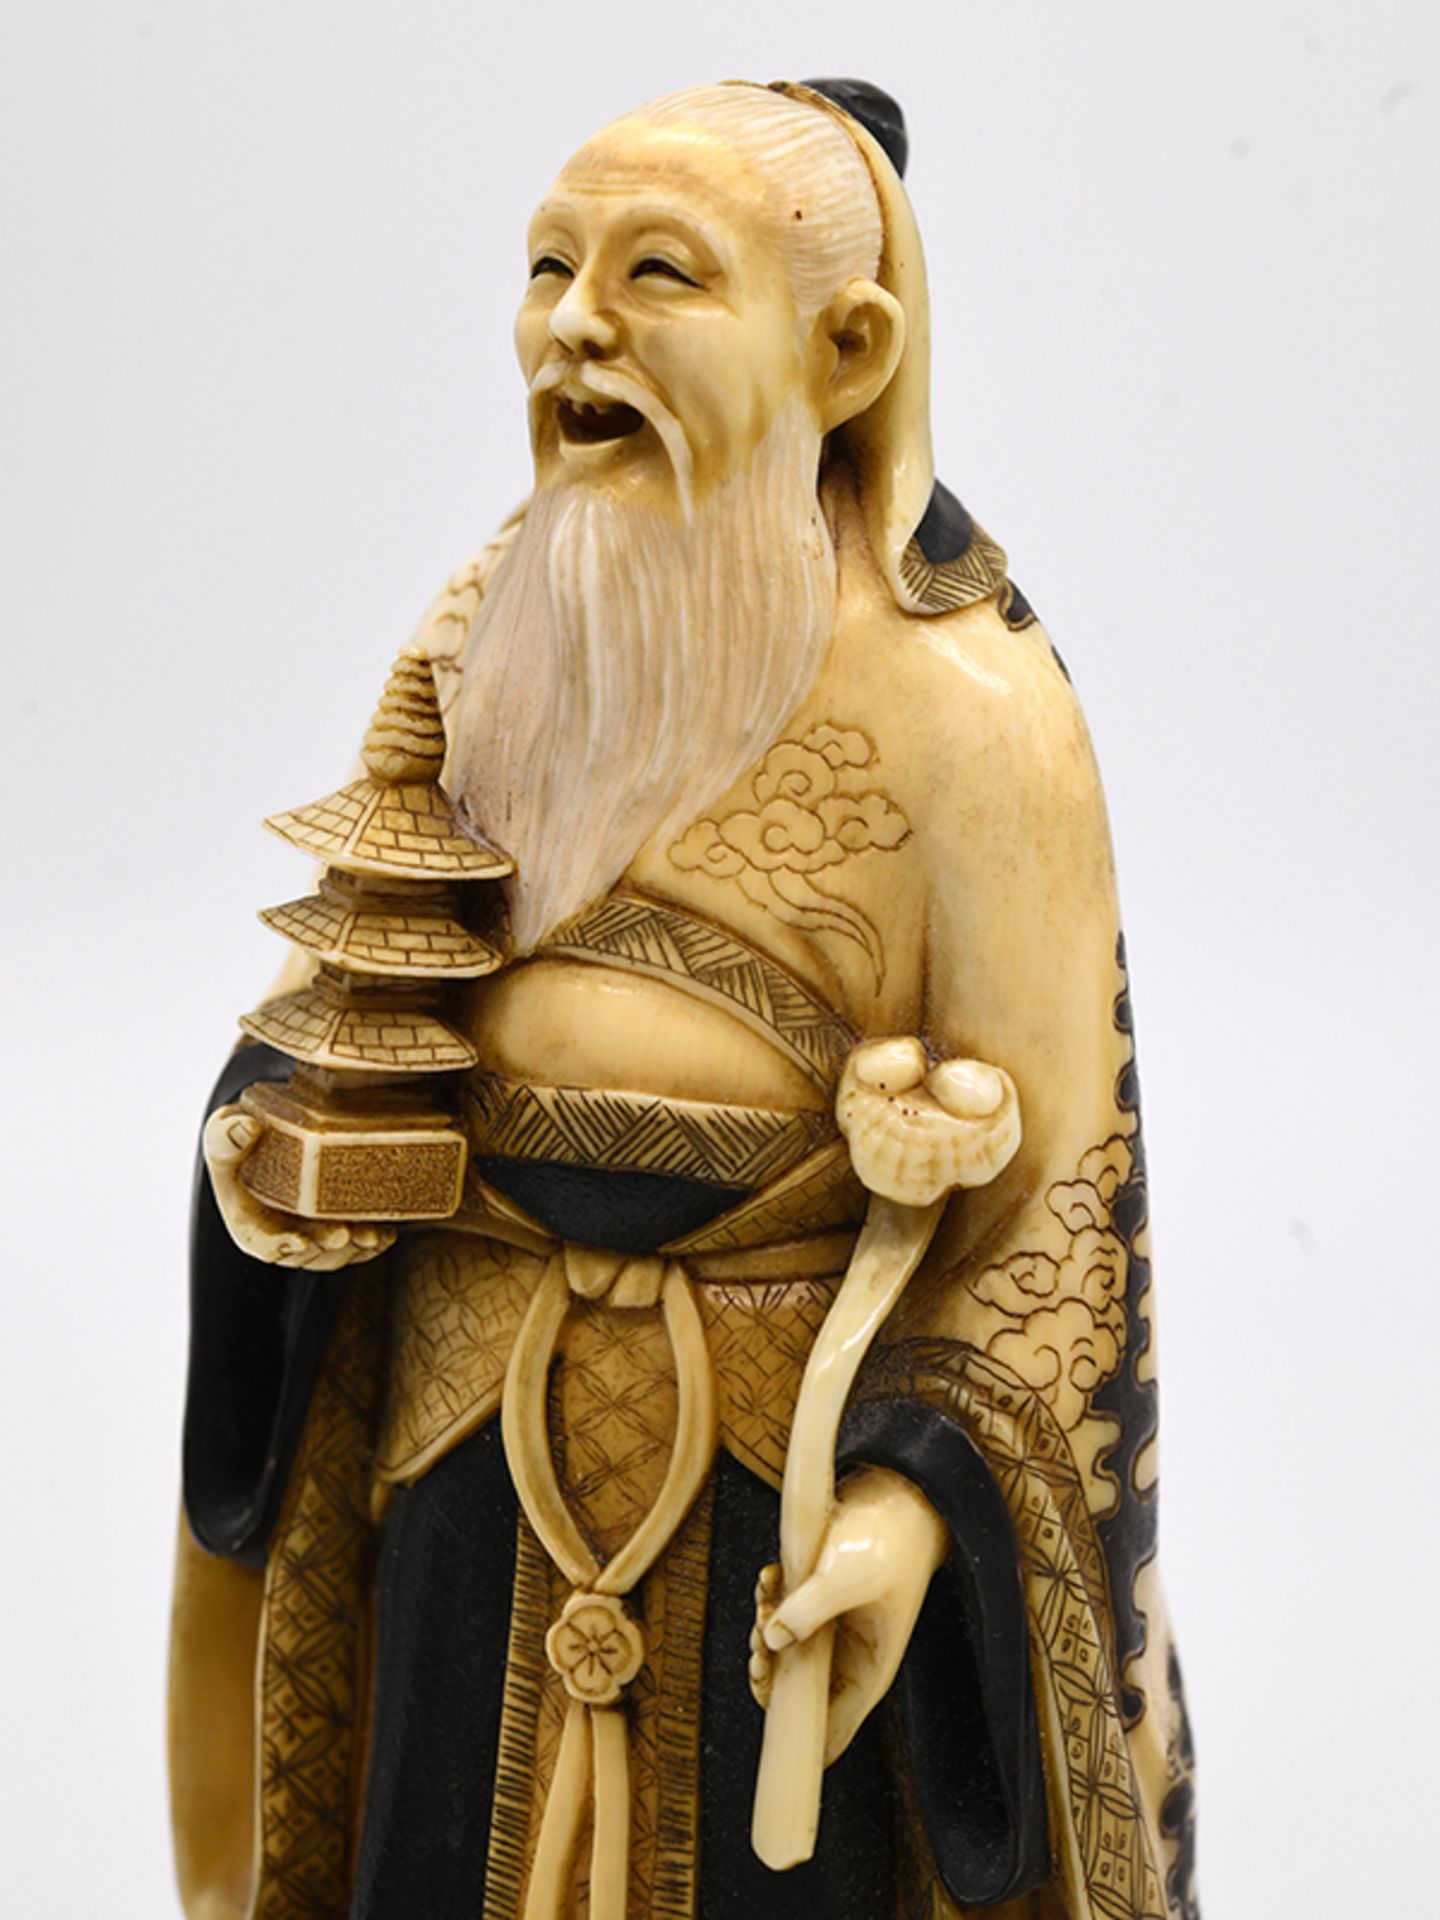 Okimono eines bÃ¤rtigen alten Mannes mit Ruyi-Zepter und Pagode, Japan, Meiji-Zeit (um 1890). - Image 7 of 8